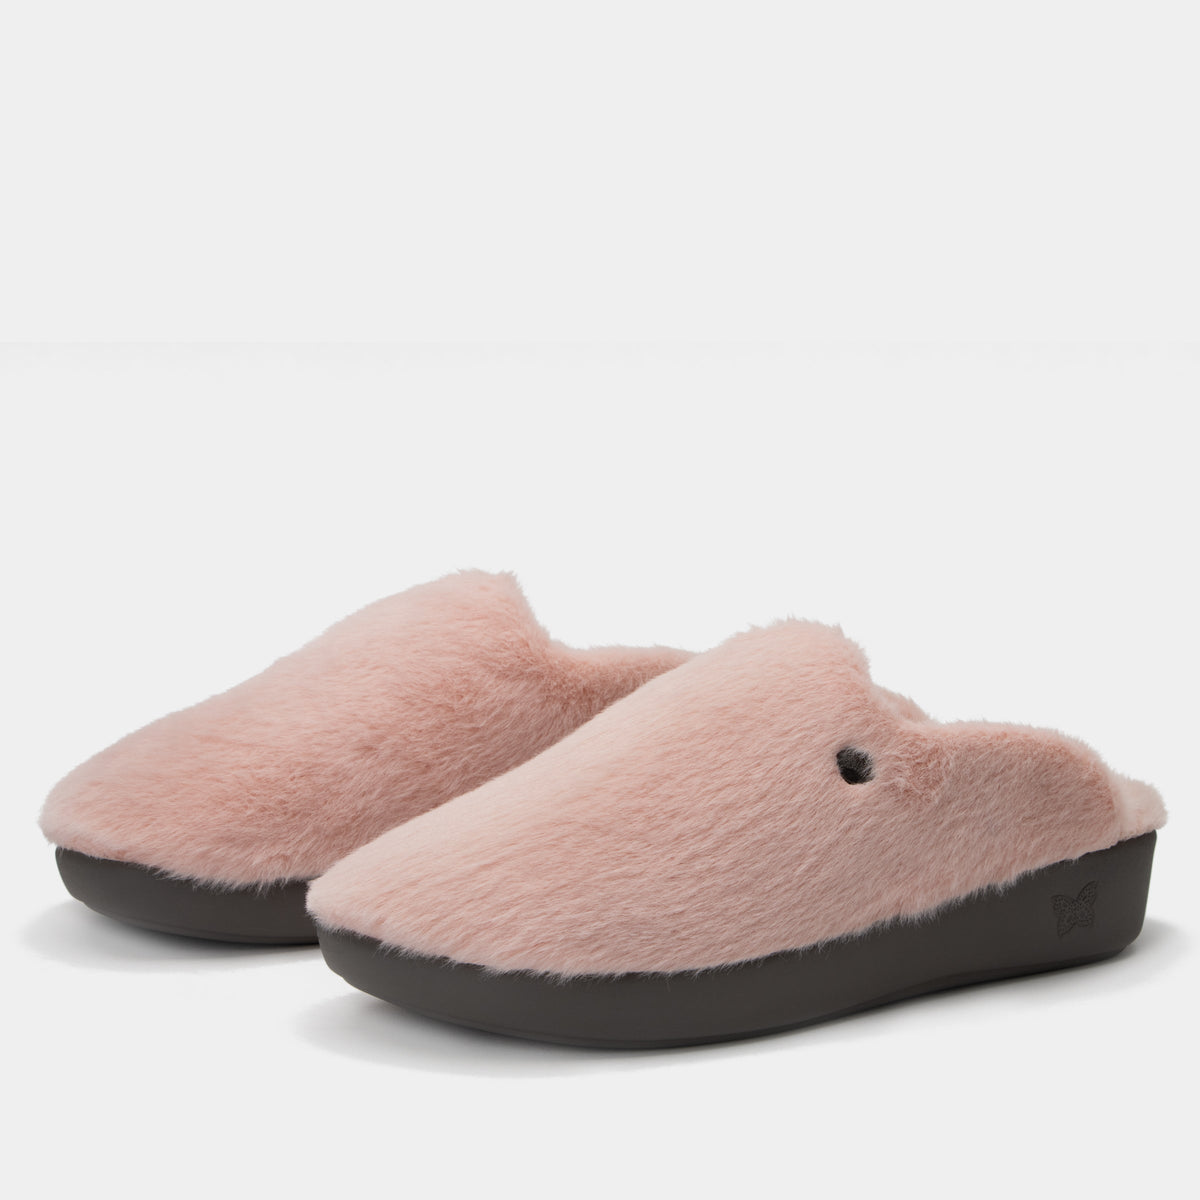 Leisurelee 2 Pink Slipper - Alegria Shoes